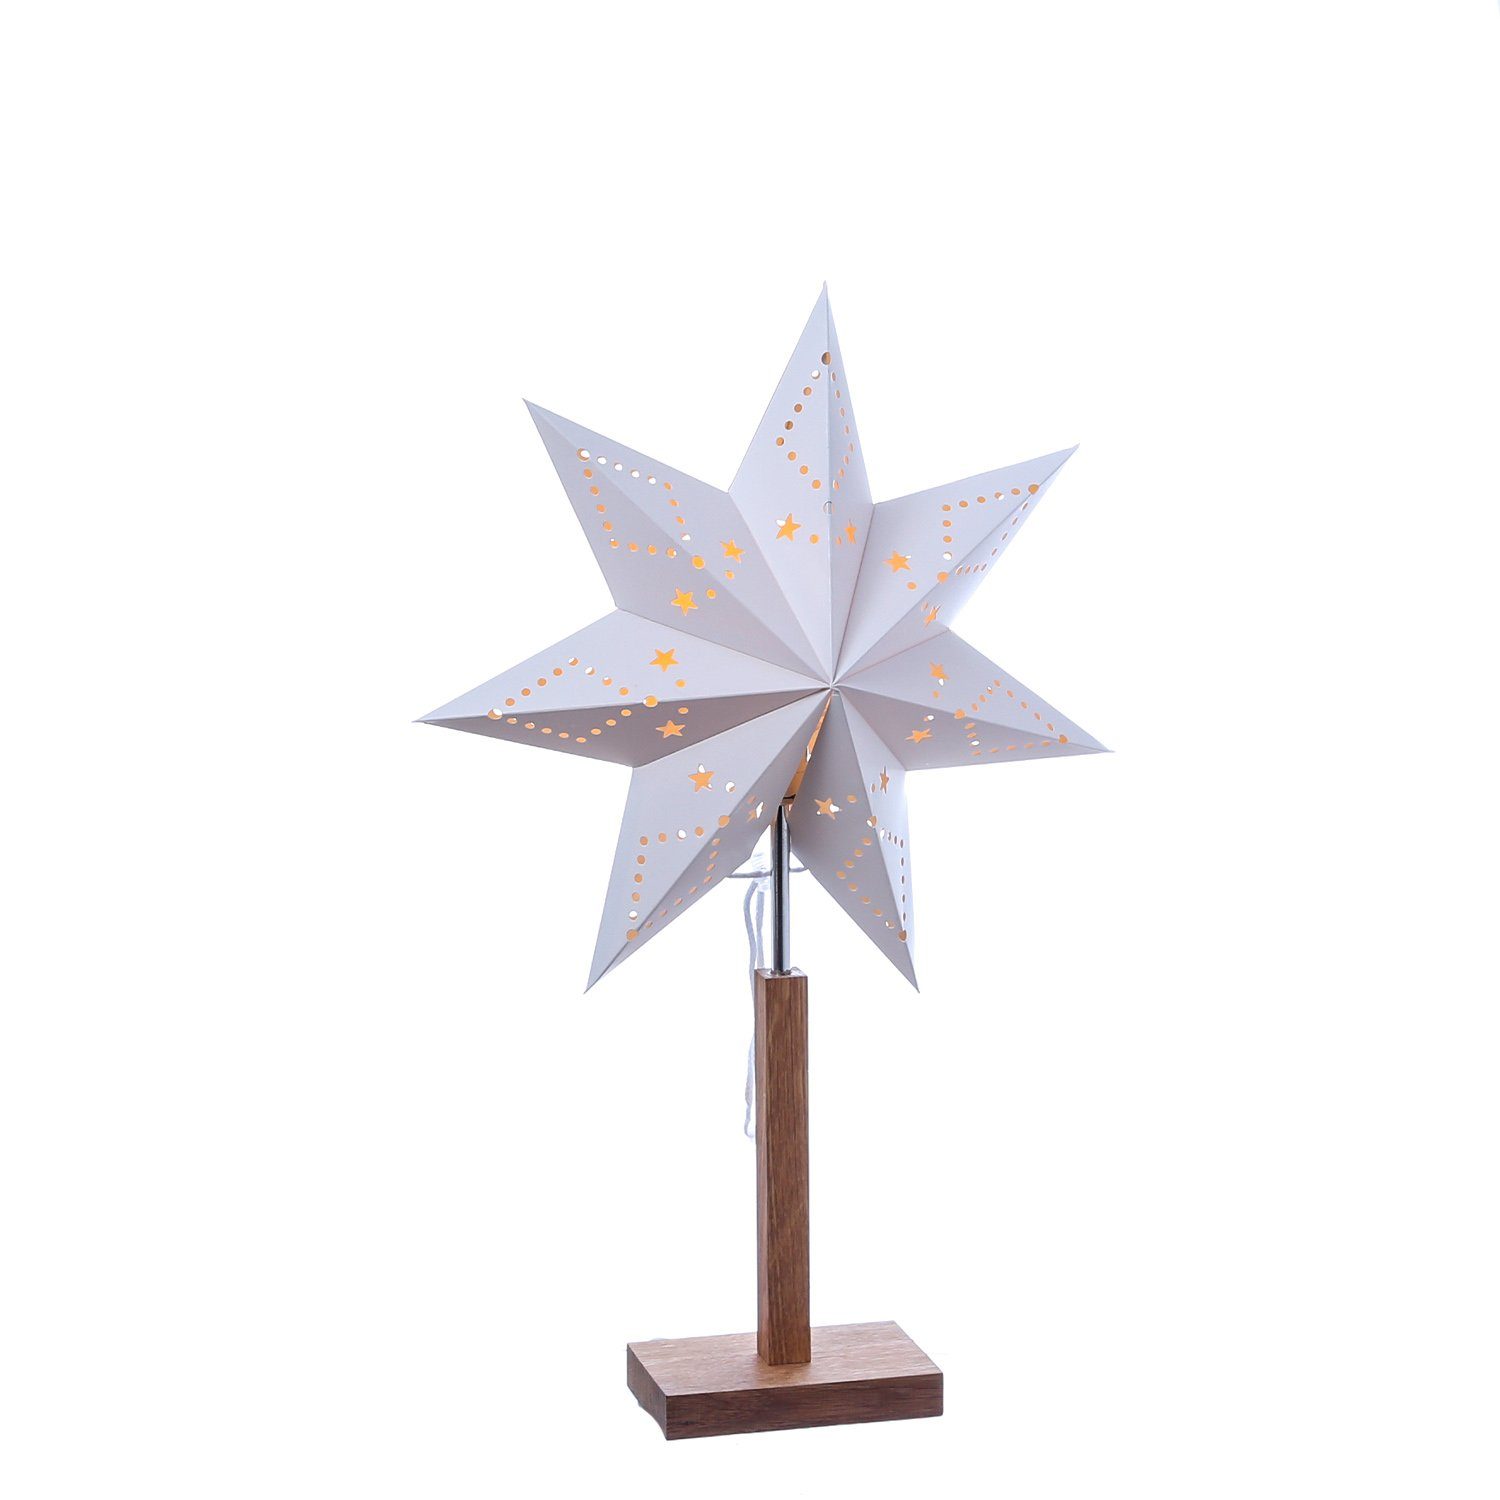 MARELIDA LED Stern Papierstern Lisa Weihnachtsstern Leuchtstern 52cm E14 Fassung | Beleuchtete Weihnachtssterne